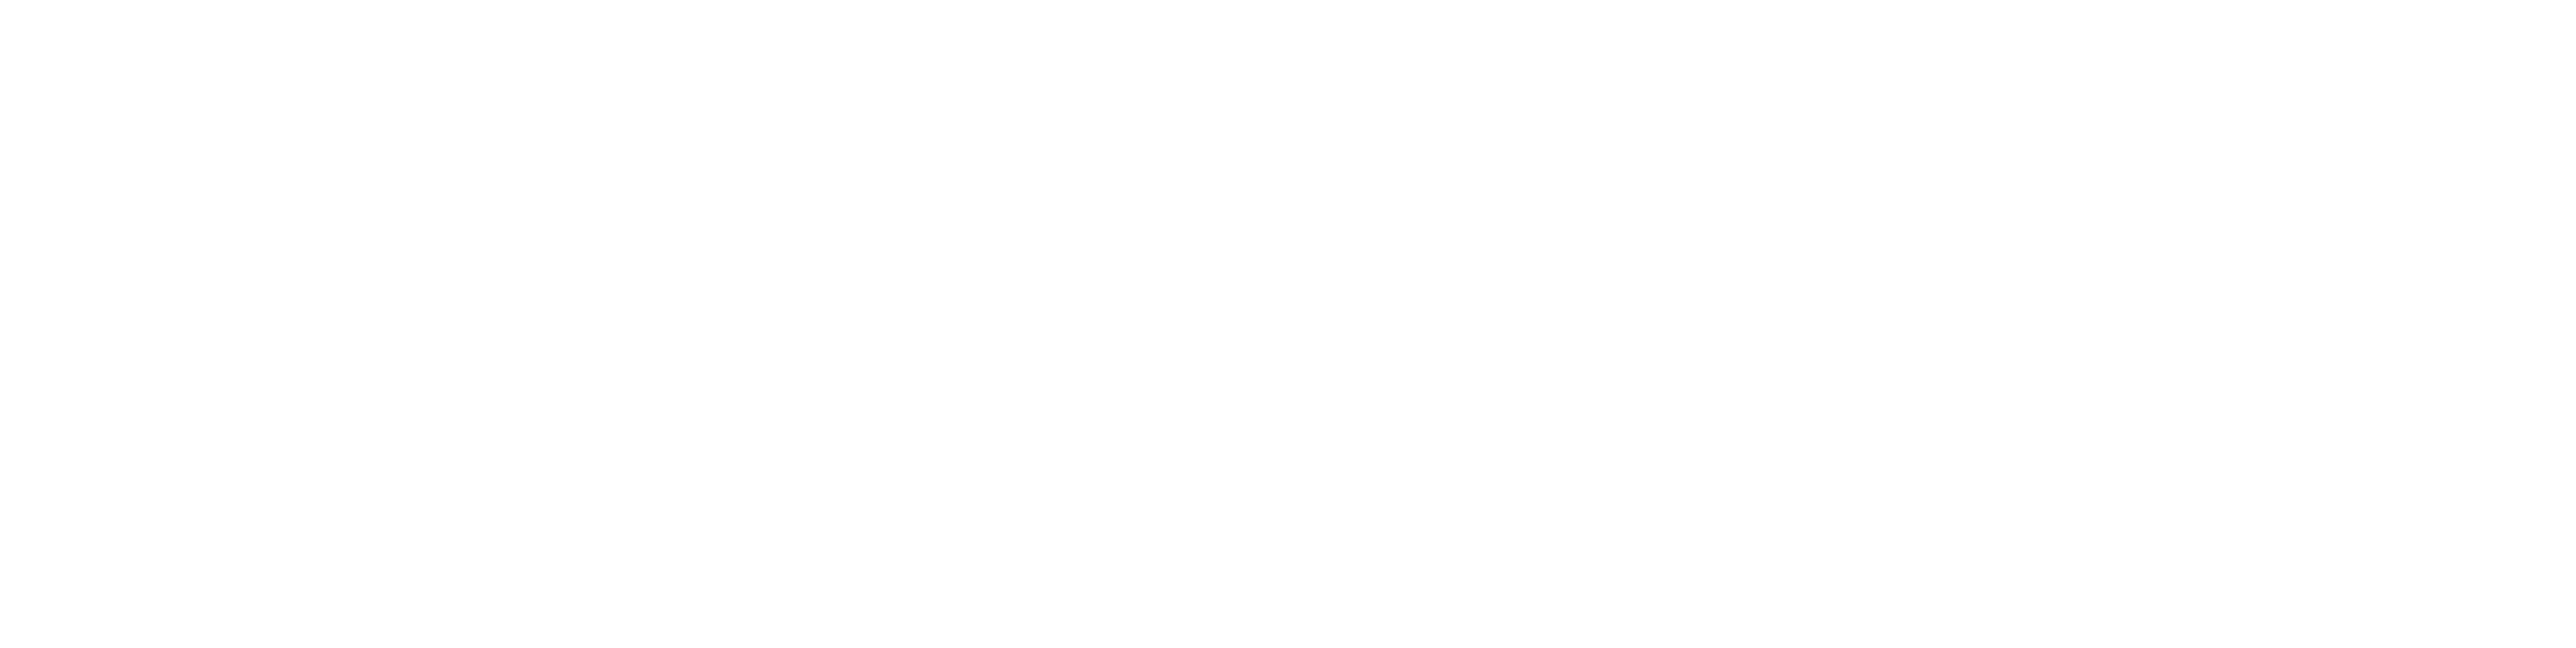 Bison Digital